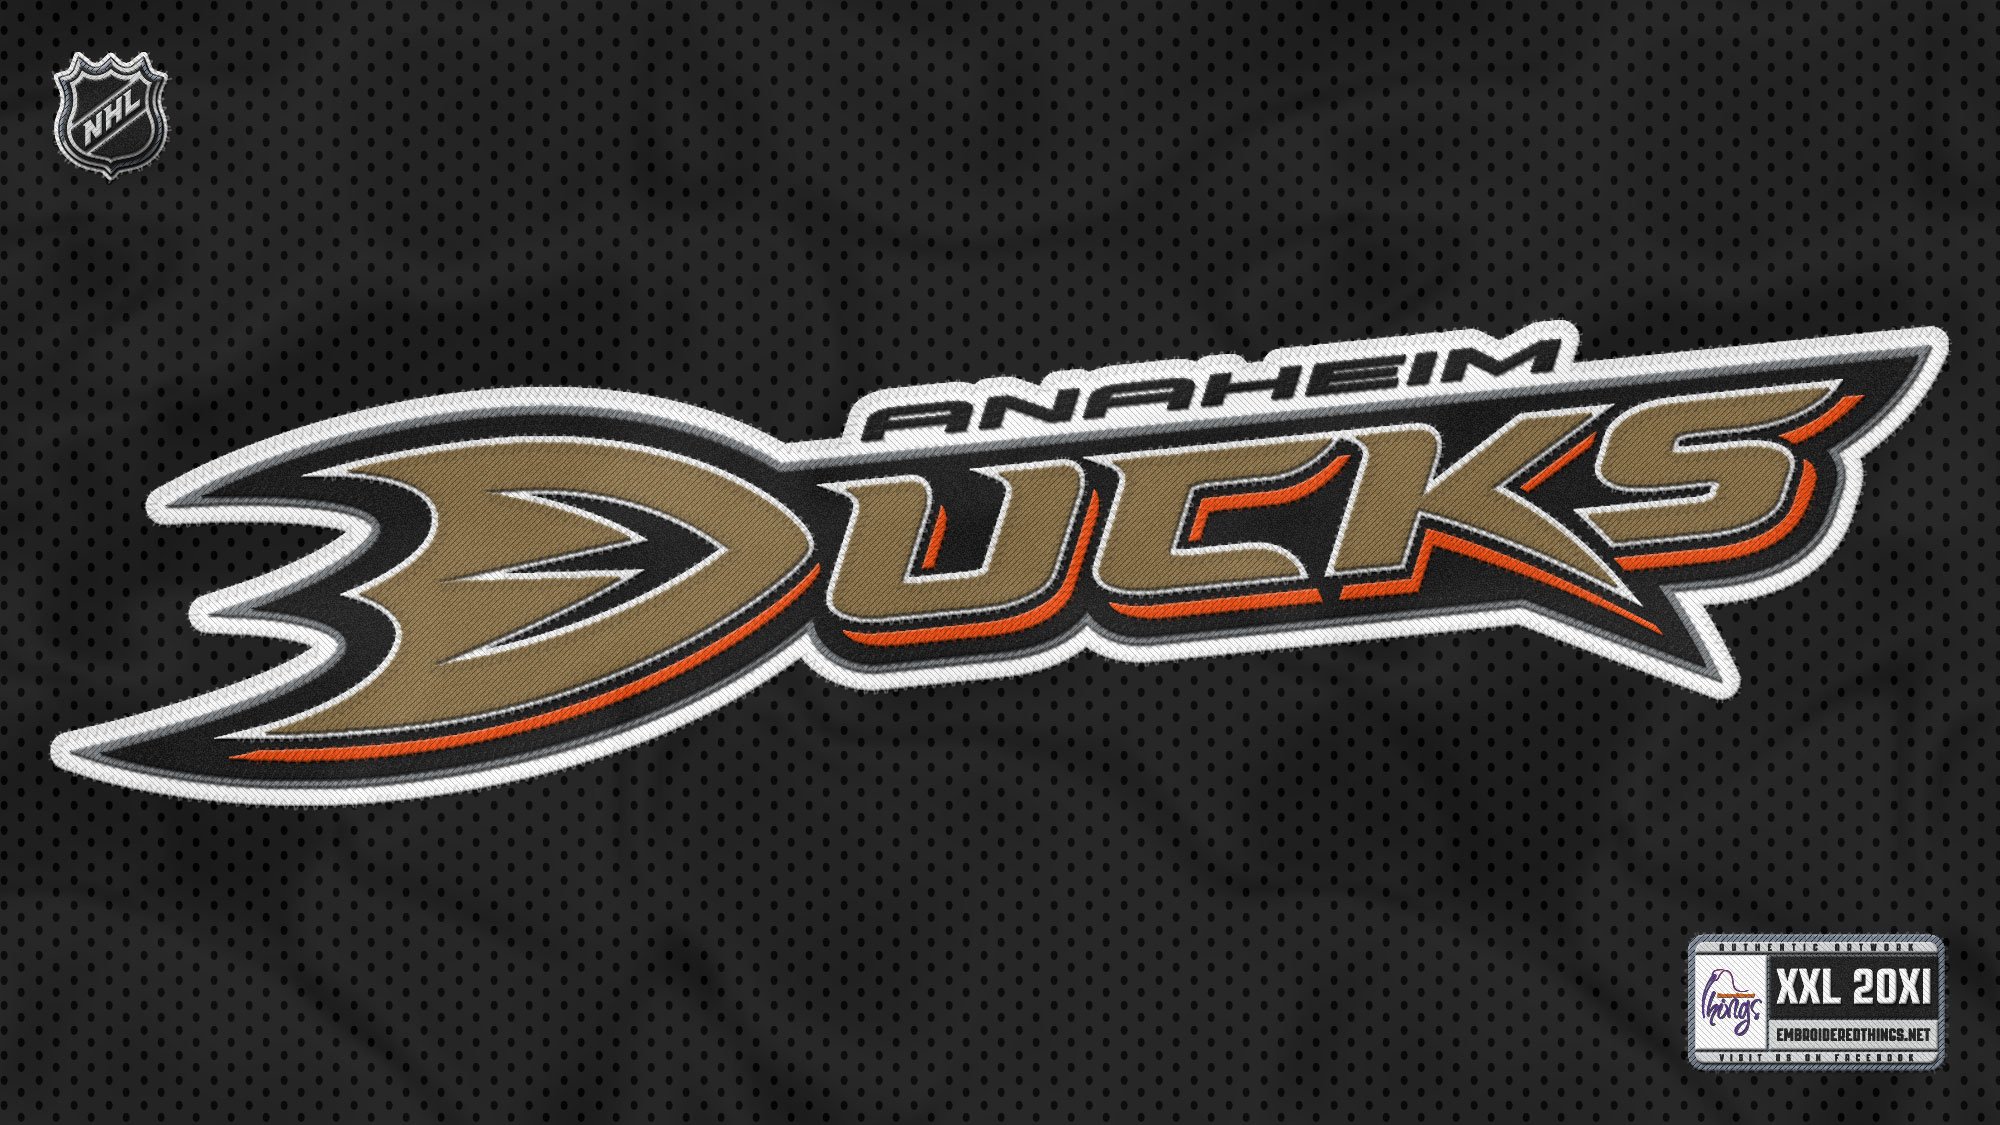 Anaheim Ducks (NHL) iPhone X/XS/XR/11 PRO Lock Screen Chri…